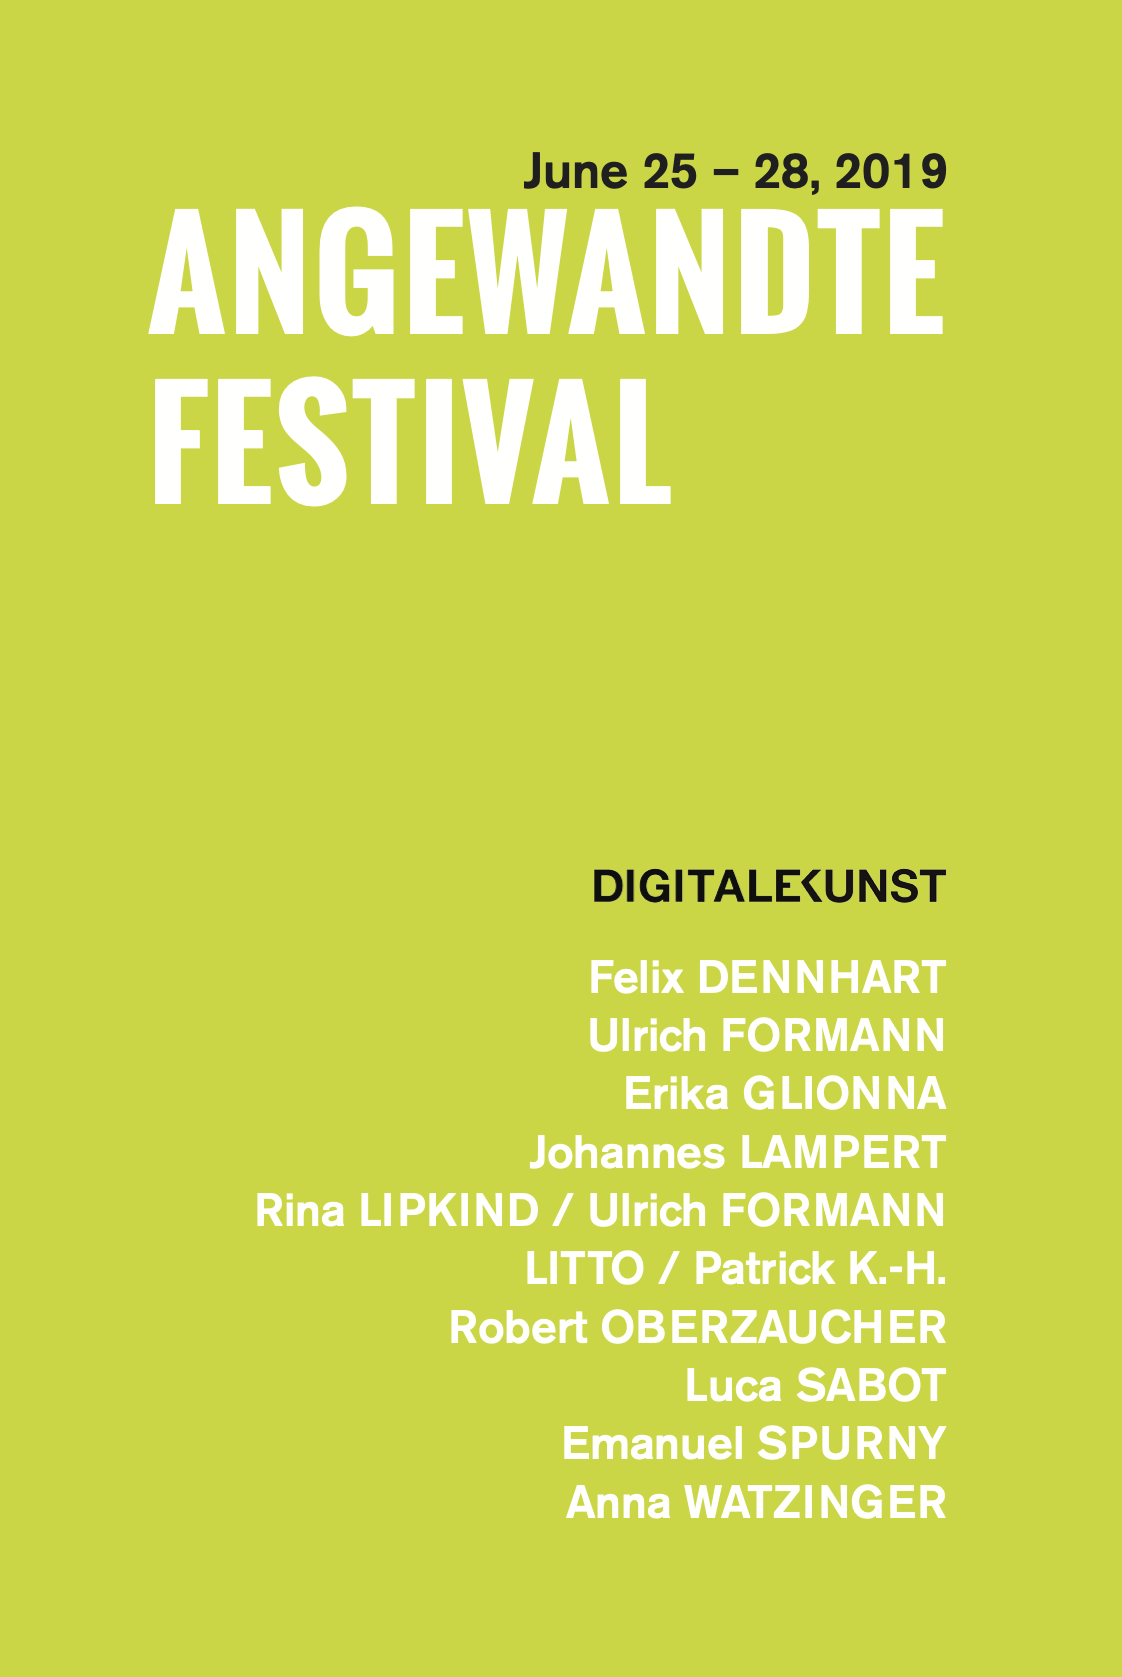 Angewandte Festival 2019 exhibition flyer